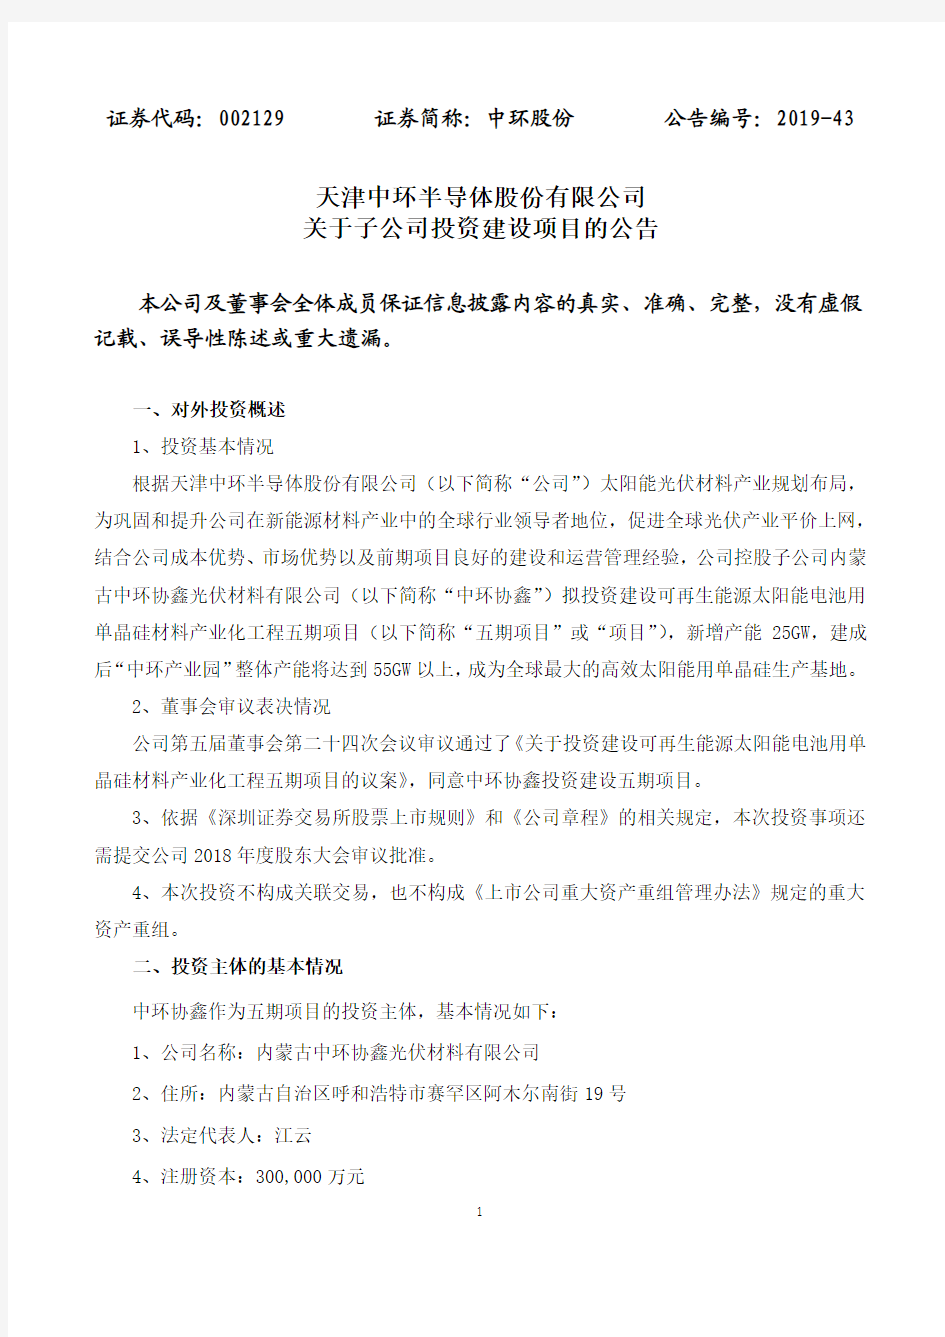 天津中环半导体股份有限公司关于子公司投资建设项目的公告